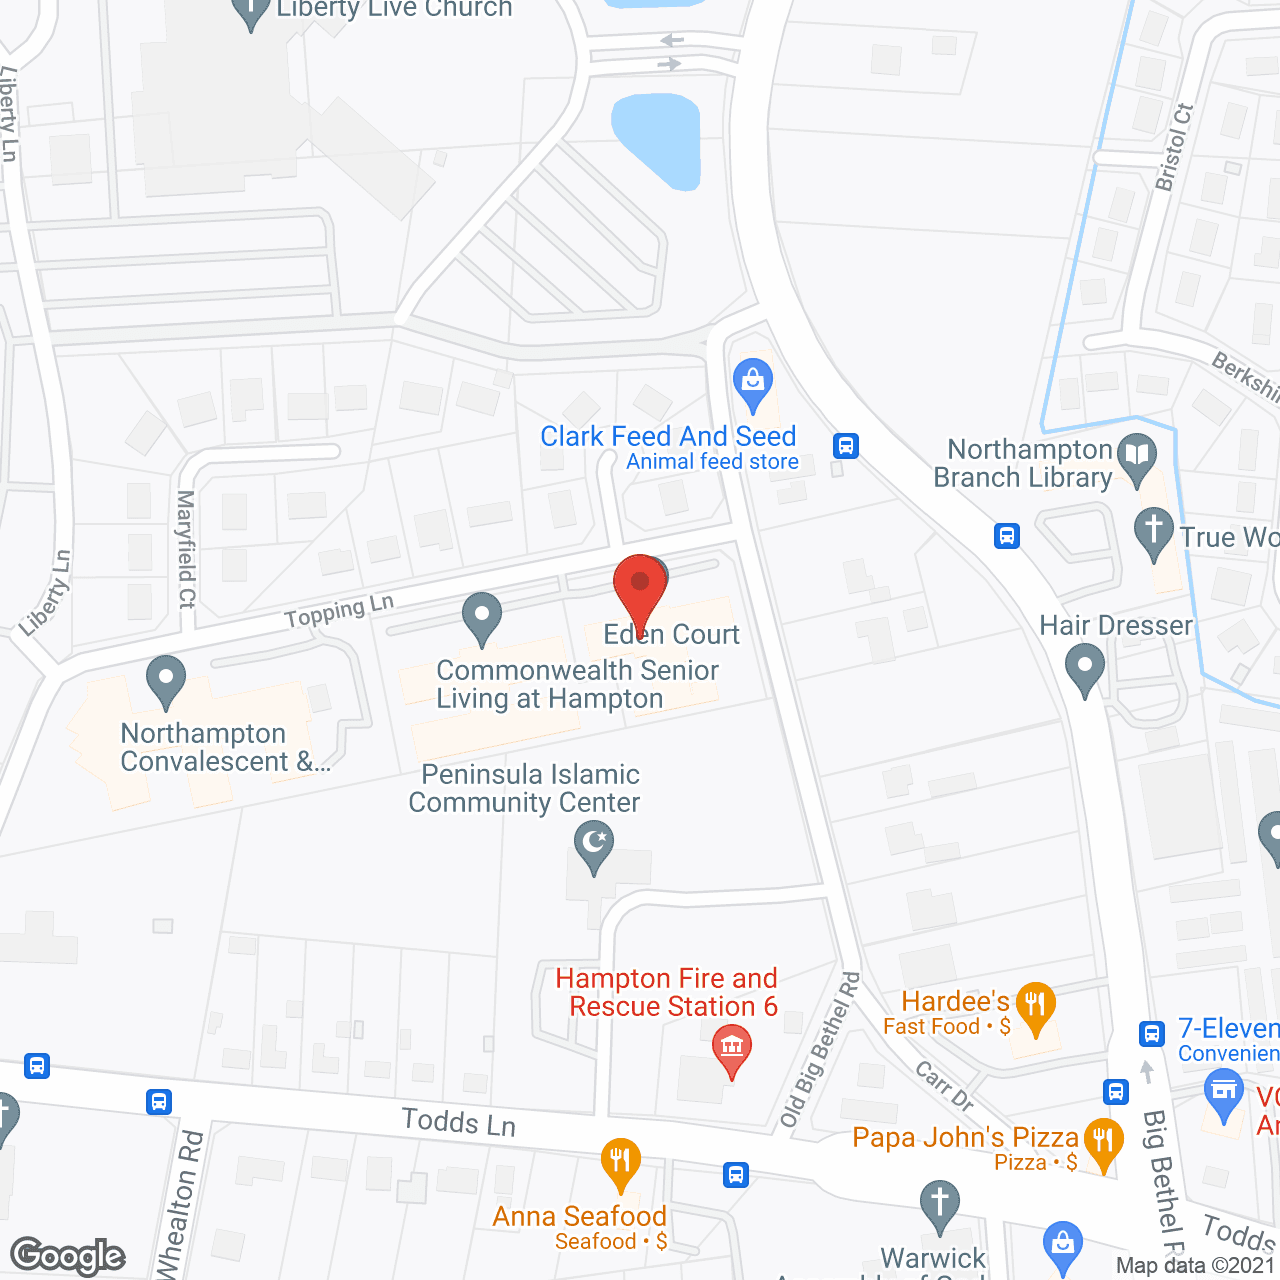 Eden Court in google map